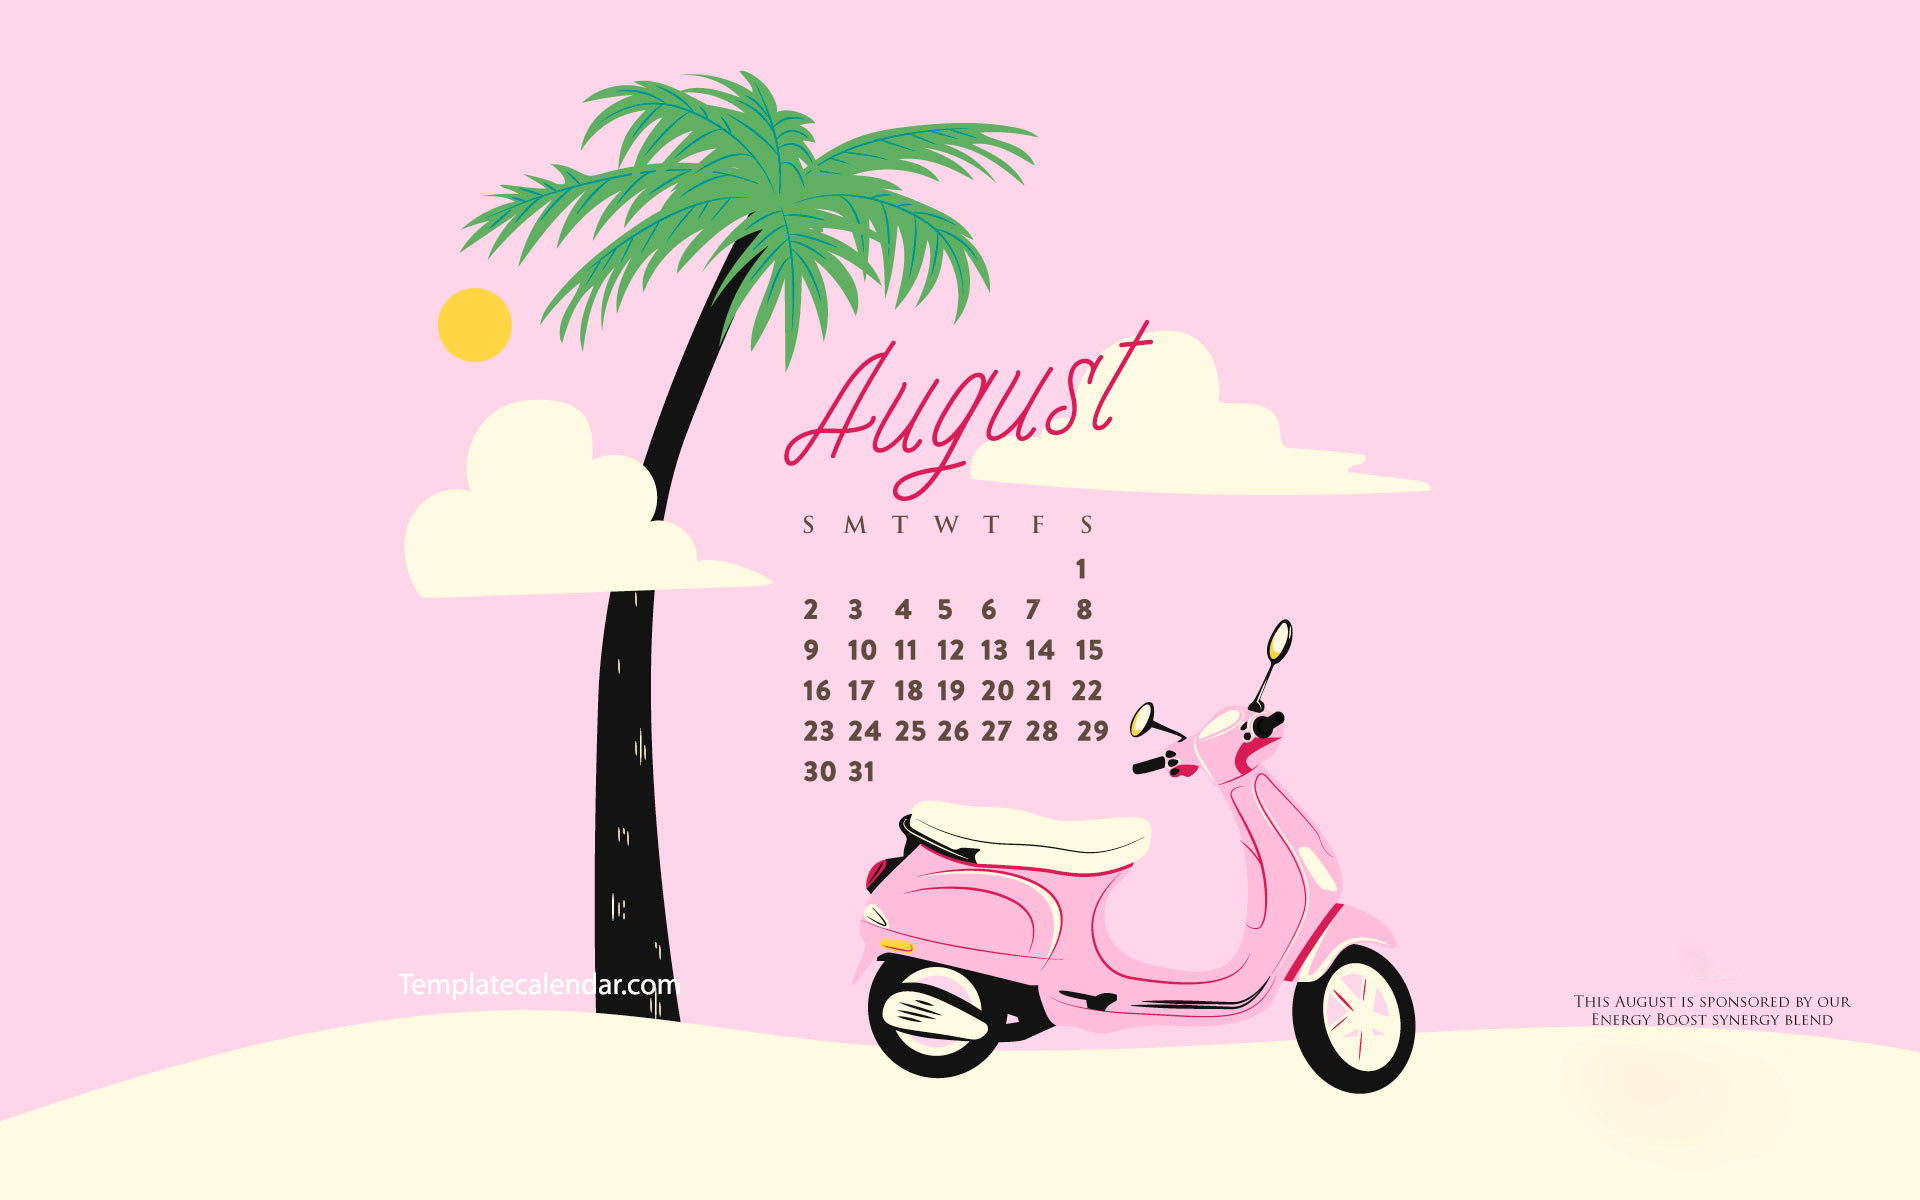 Desktop Wallpapers Calendar August 2018 (47+ pictures)